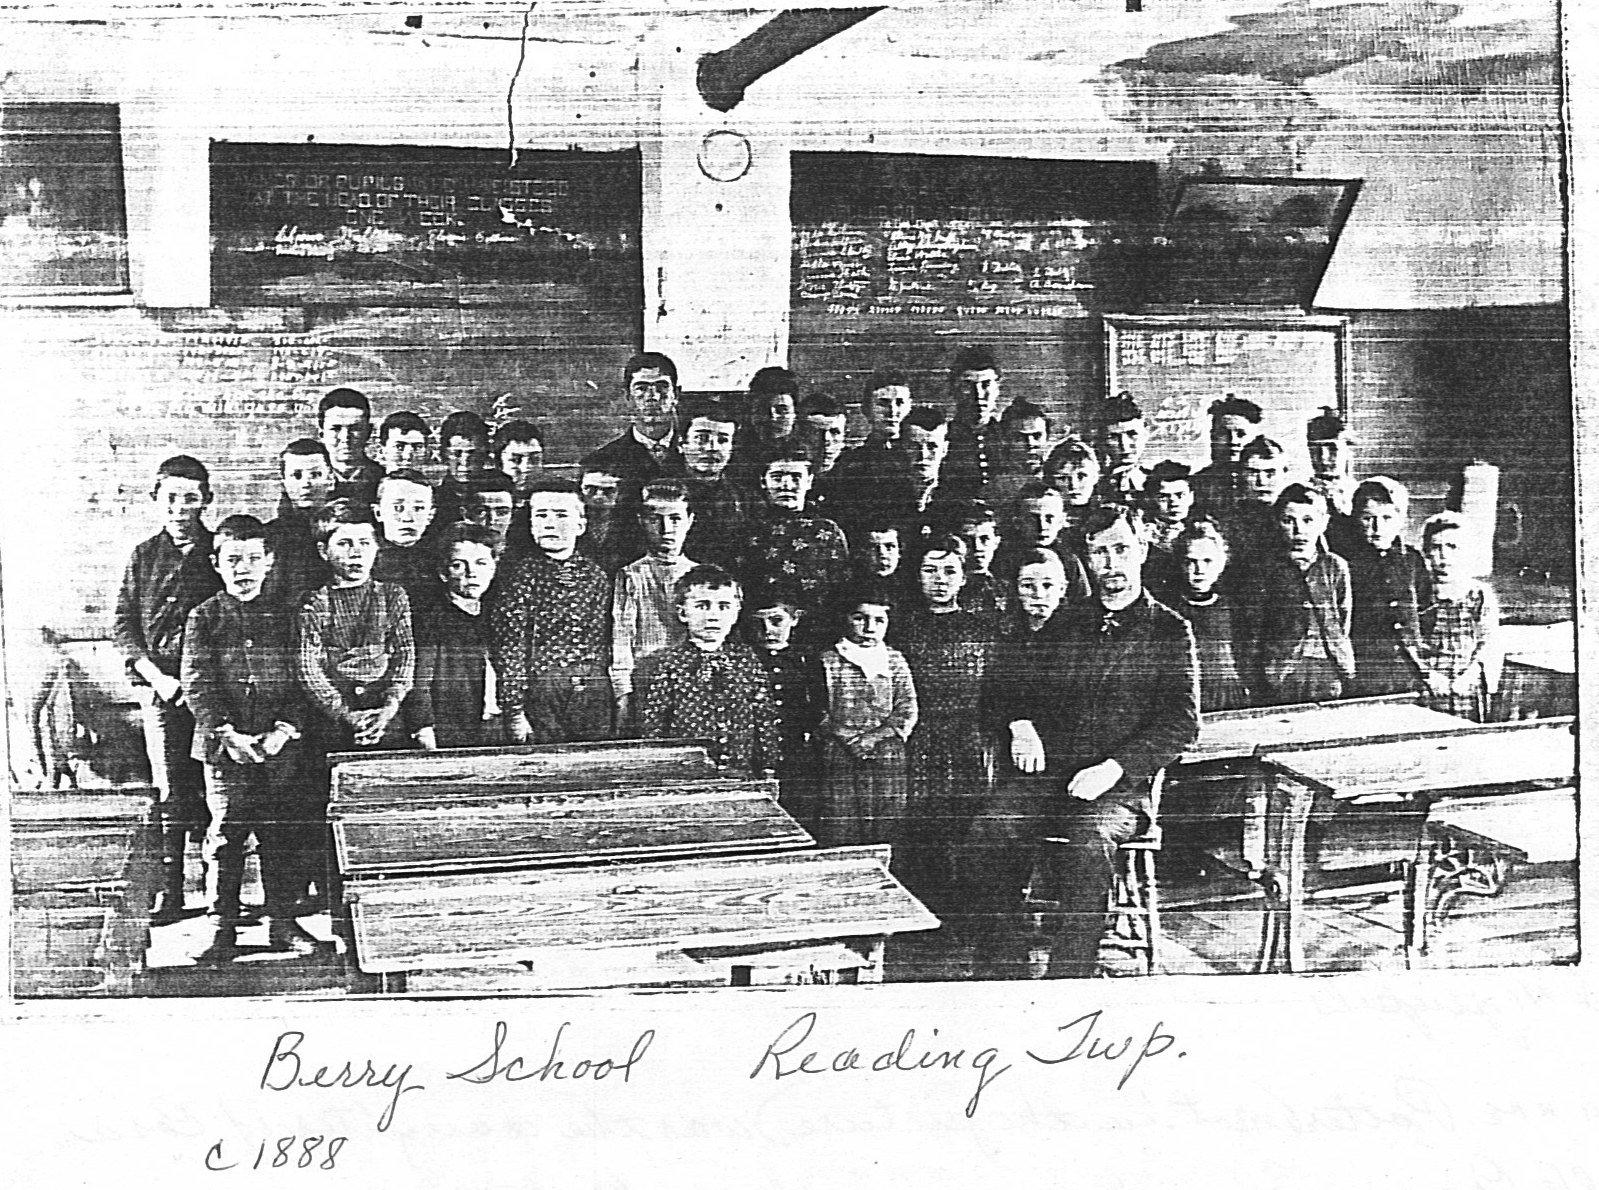 Berry School 1888